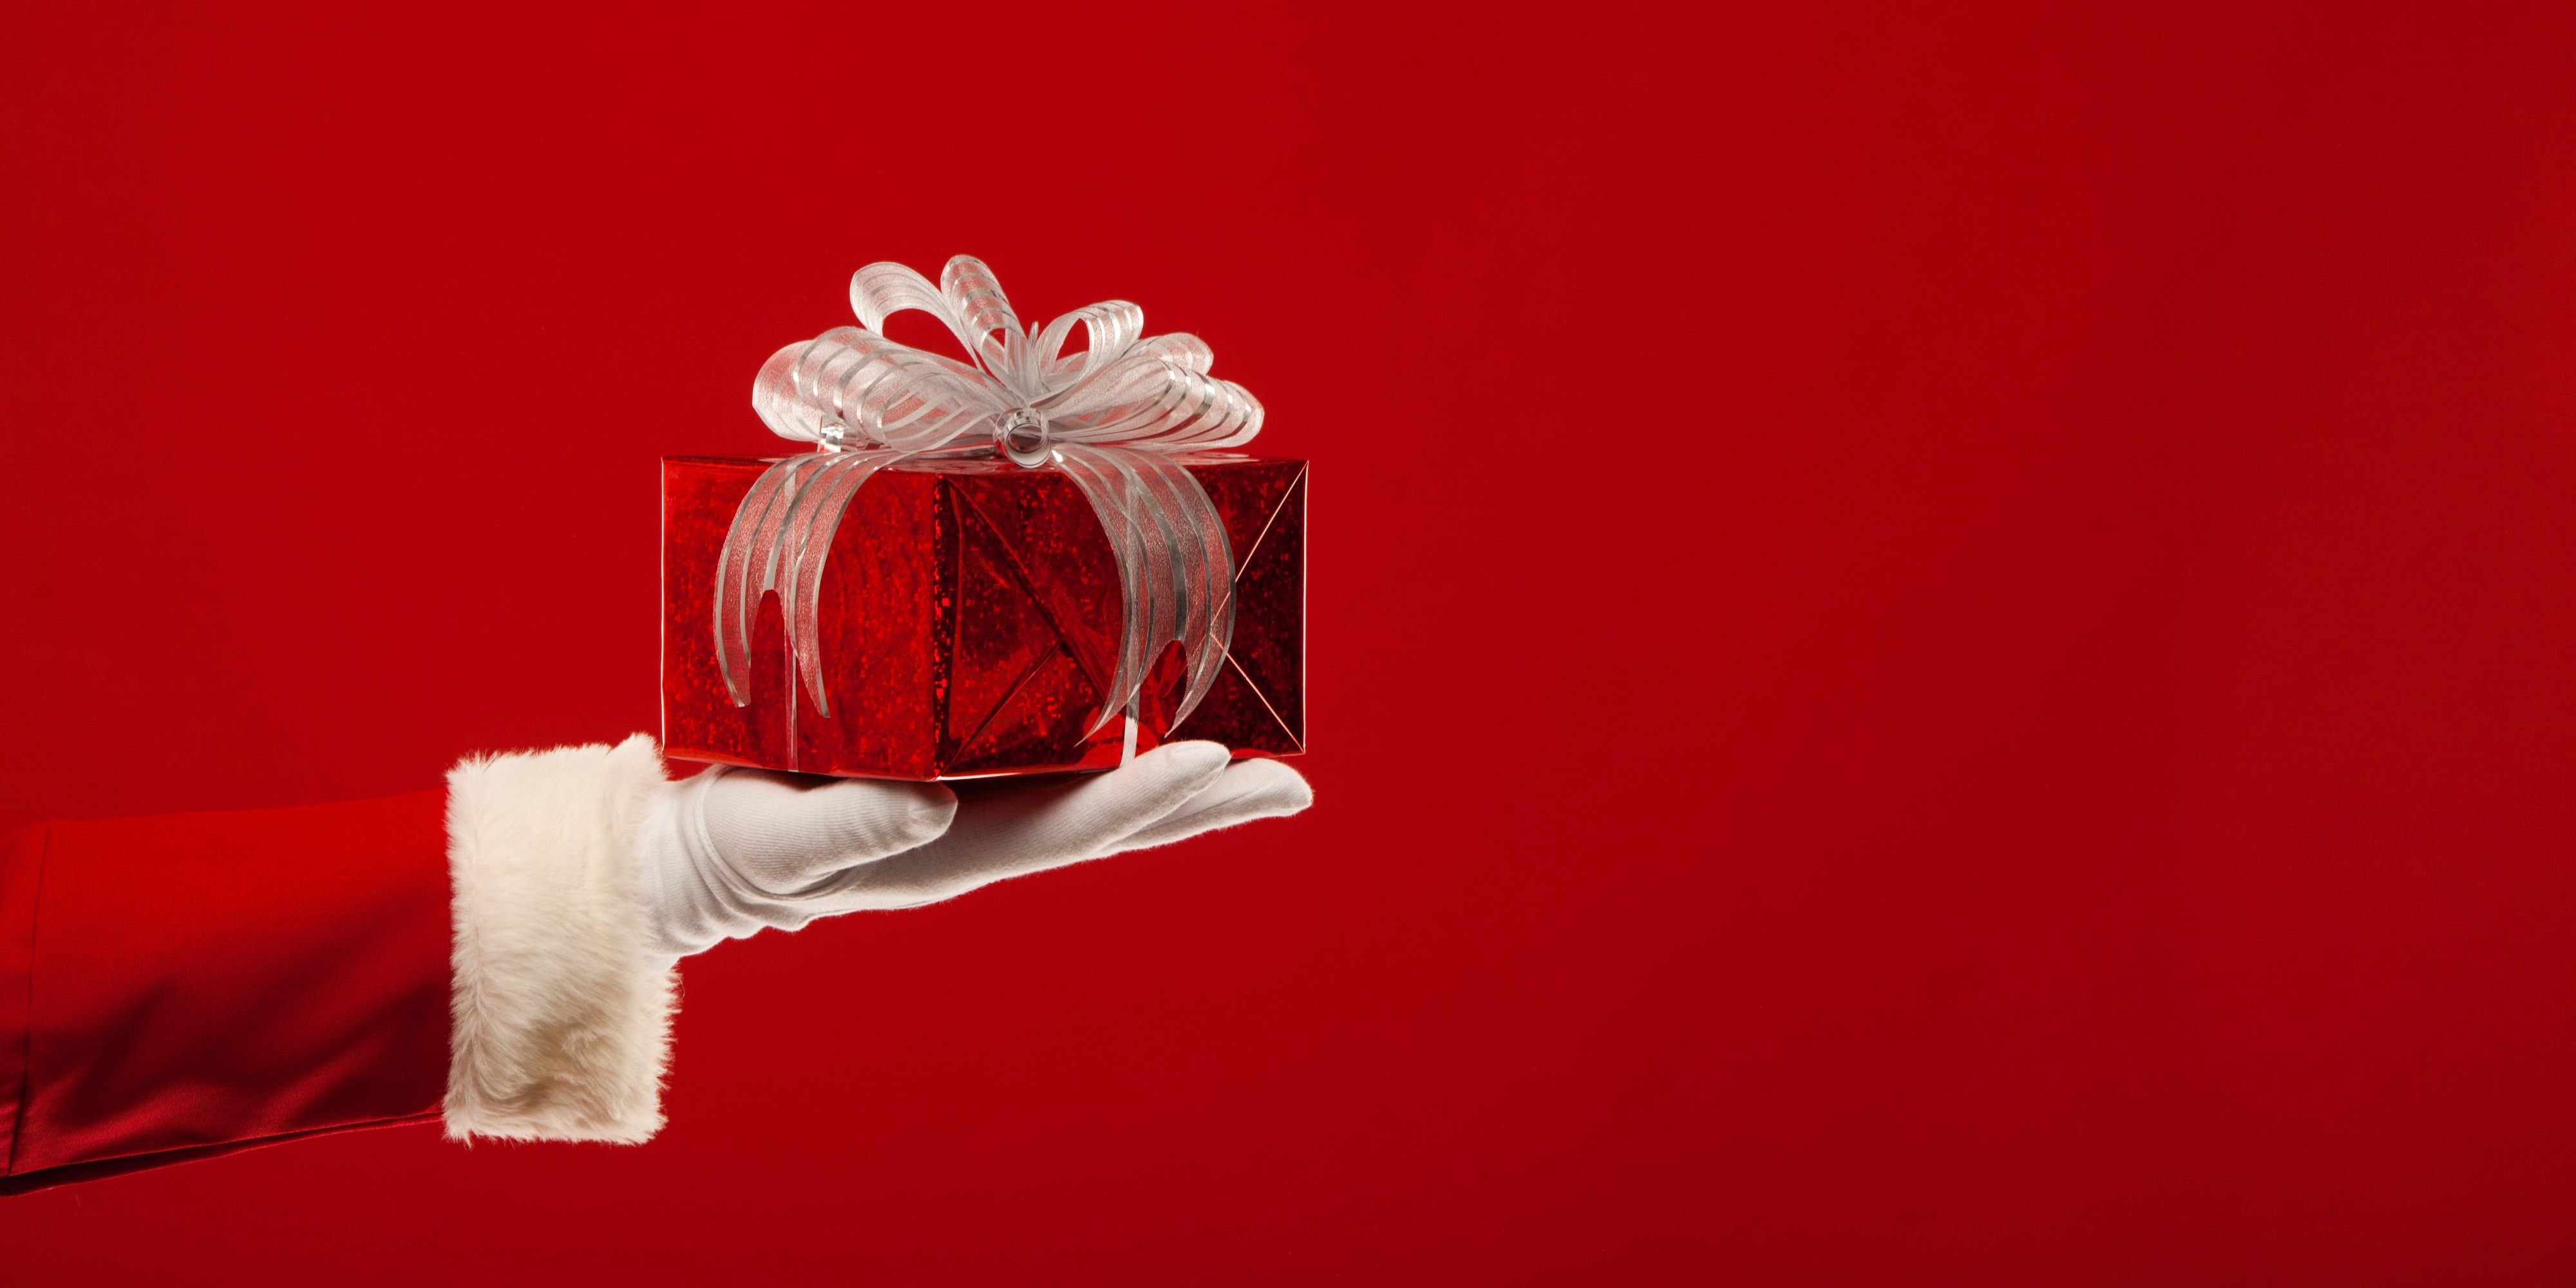 Ideas originales para regalos de navidad. Brazo de Santa Claus sobre sale con un obsequio en mano para dar una idea de regalo de navidad.